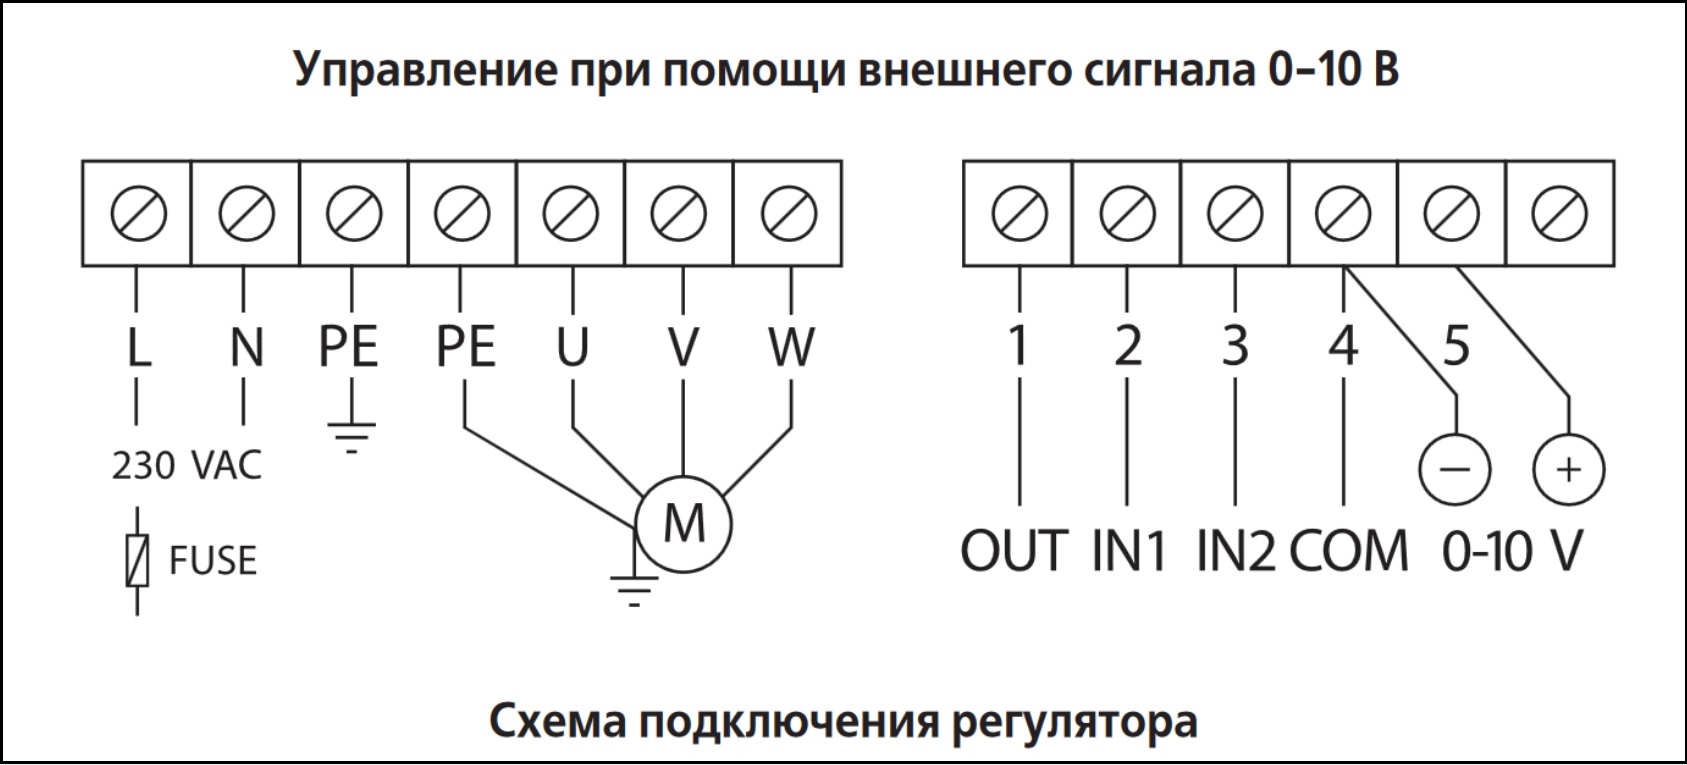 Схема подключения регулятора скорости ВЕНТС ВФЕД-1100-ТА